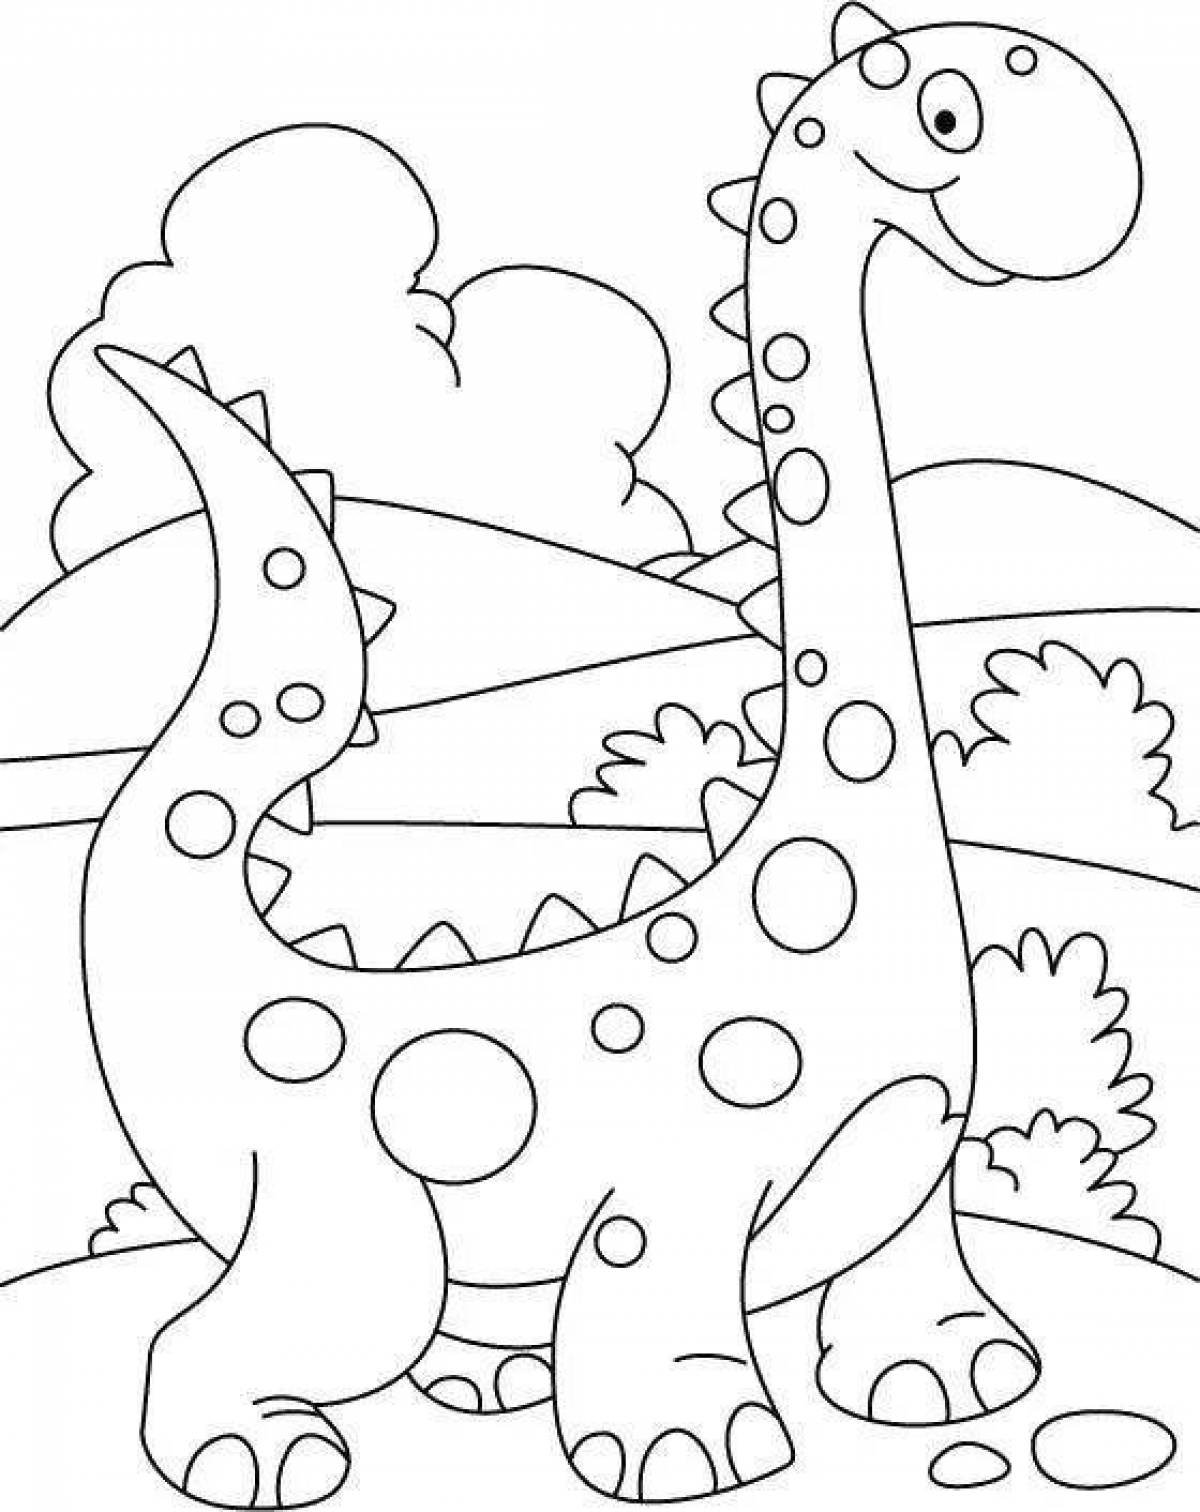 Цветная милая раскраска для детей динозавры